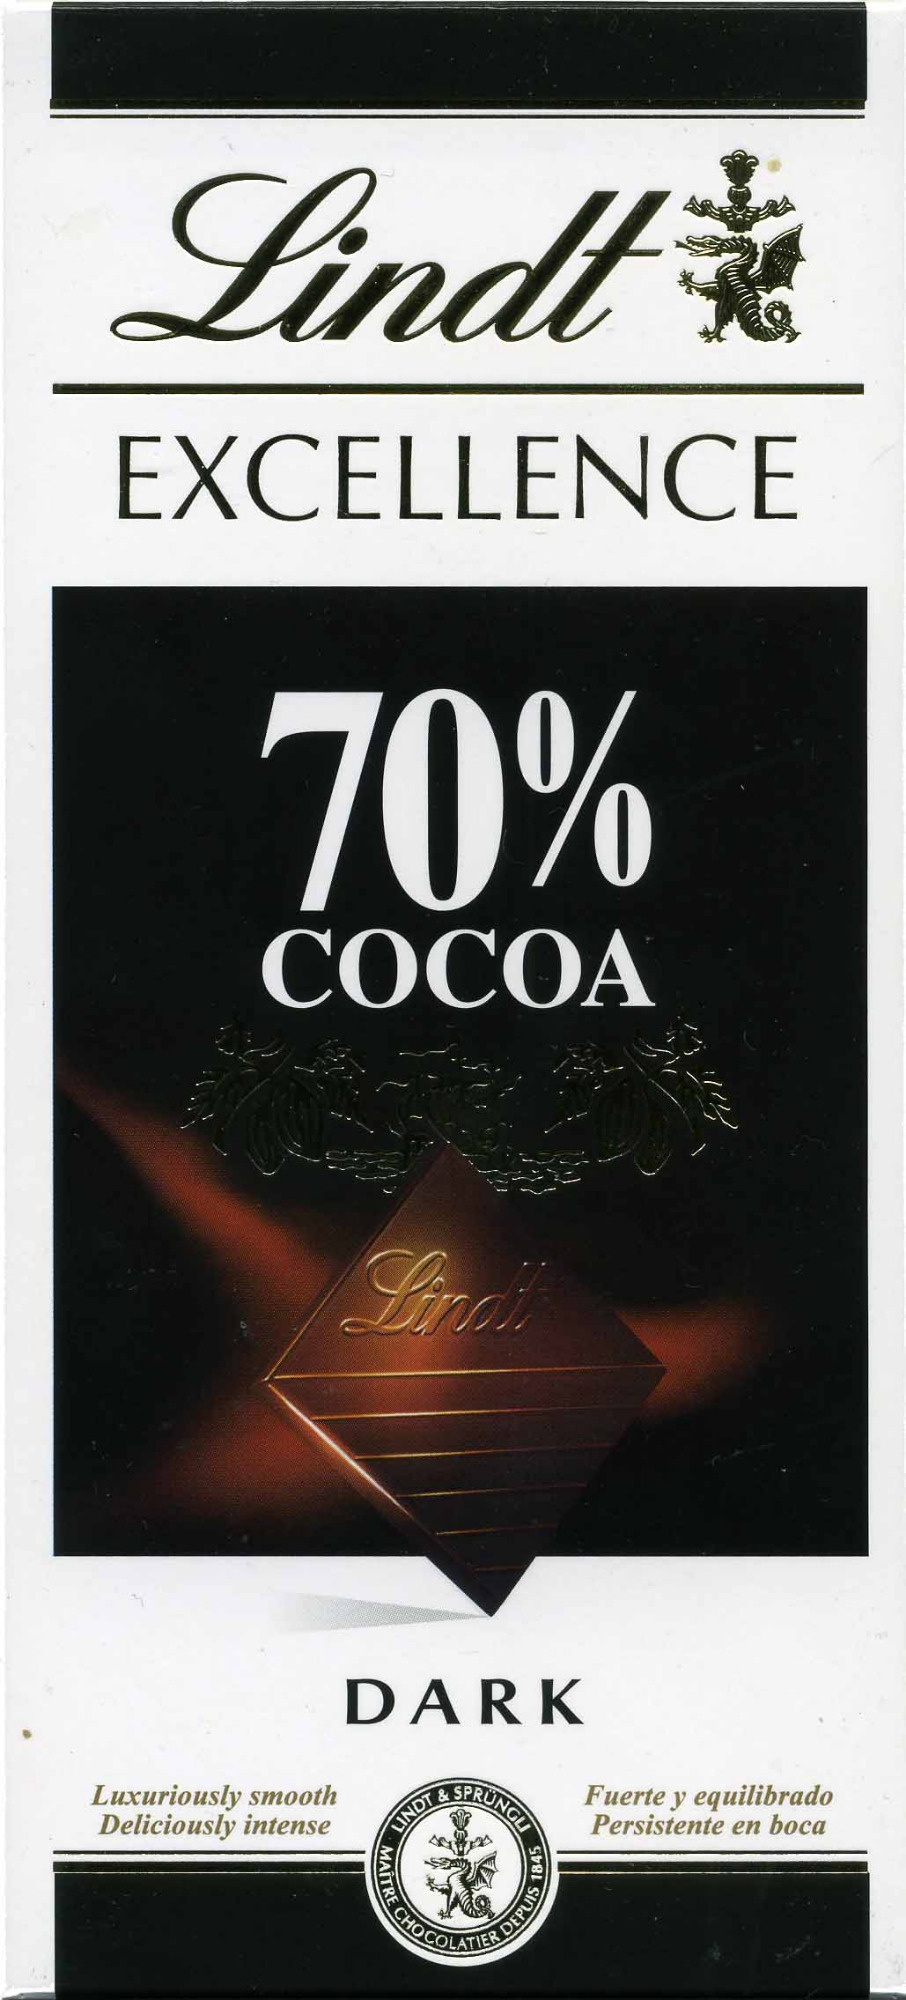 Schokolade 70% cocoa - Product - en